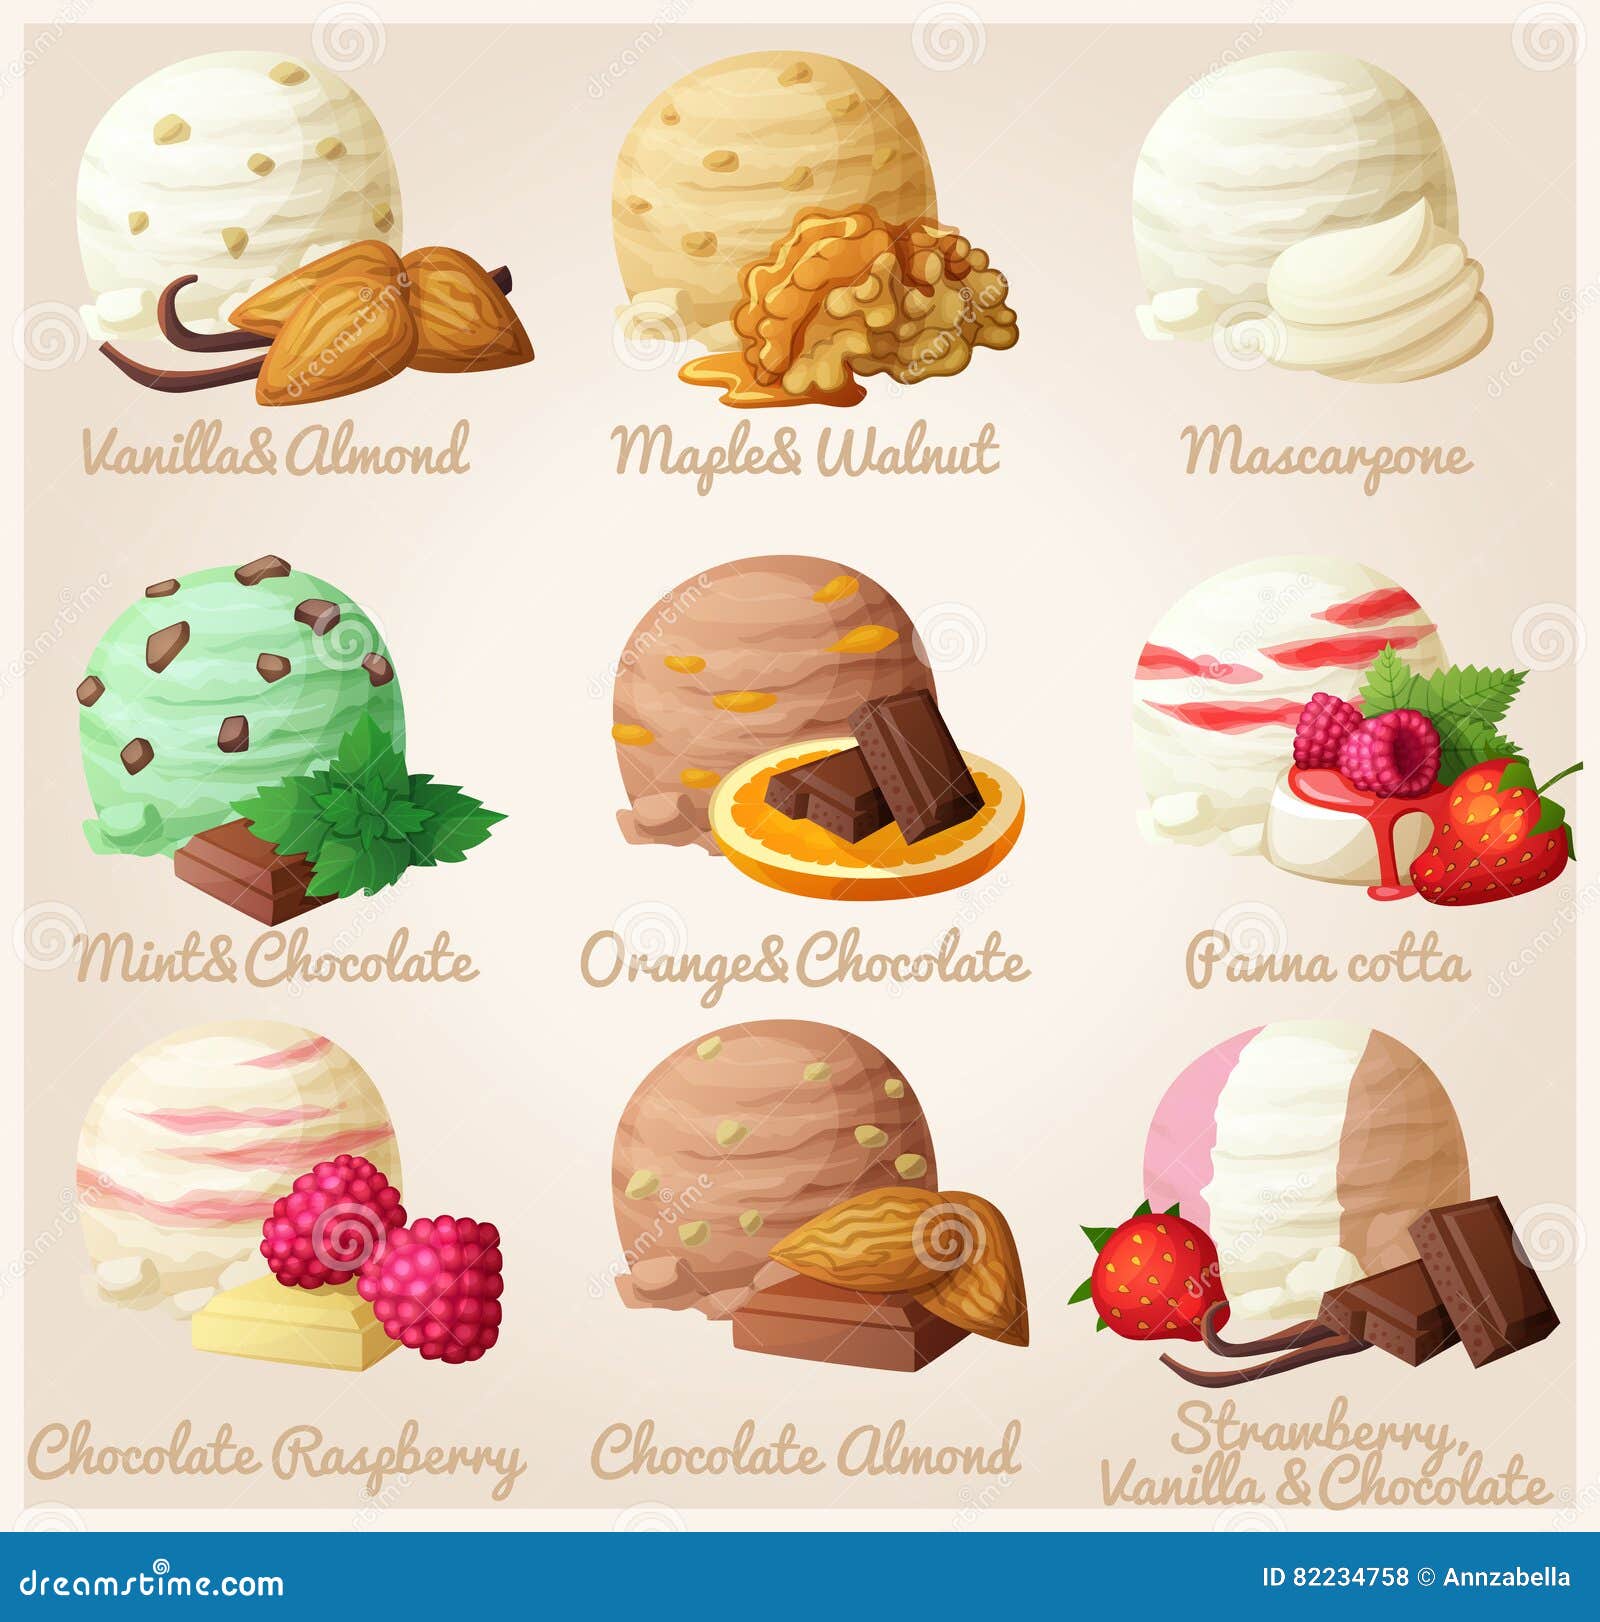 Jogo, icecream, diferente, sabores, ilustração